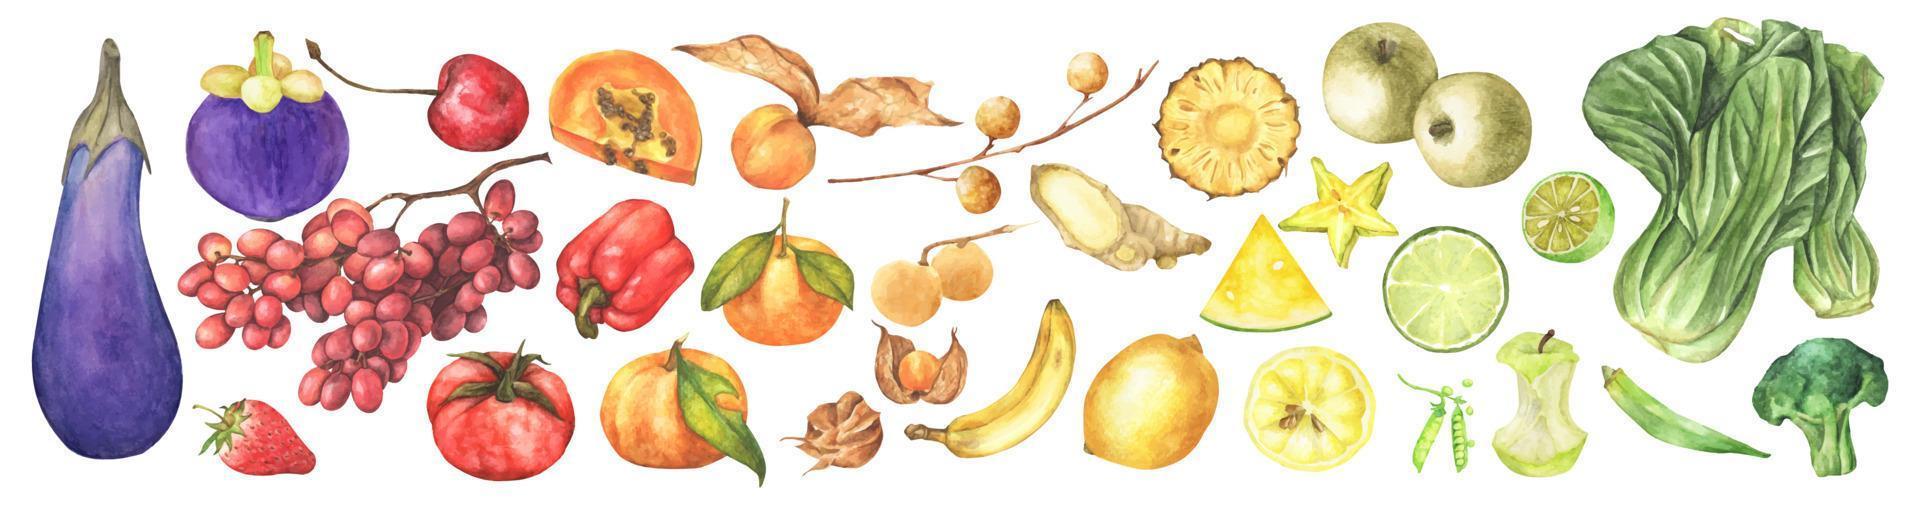 legumes frescos, frutas e superalimentos. ilustração em aquarela. vetor